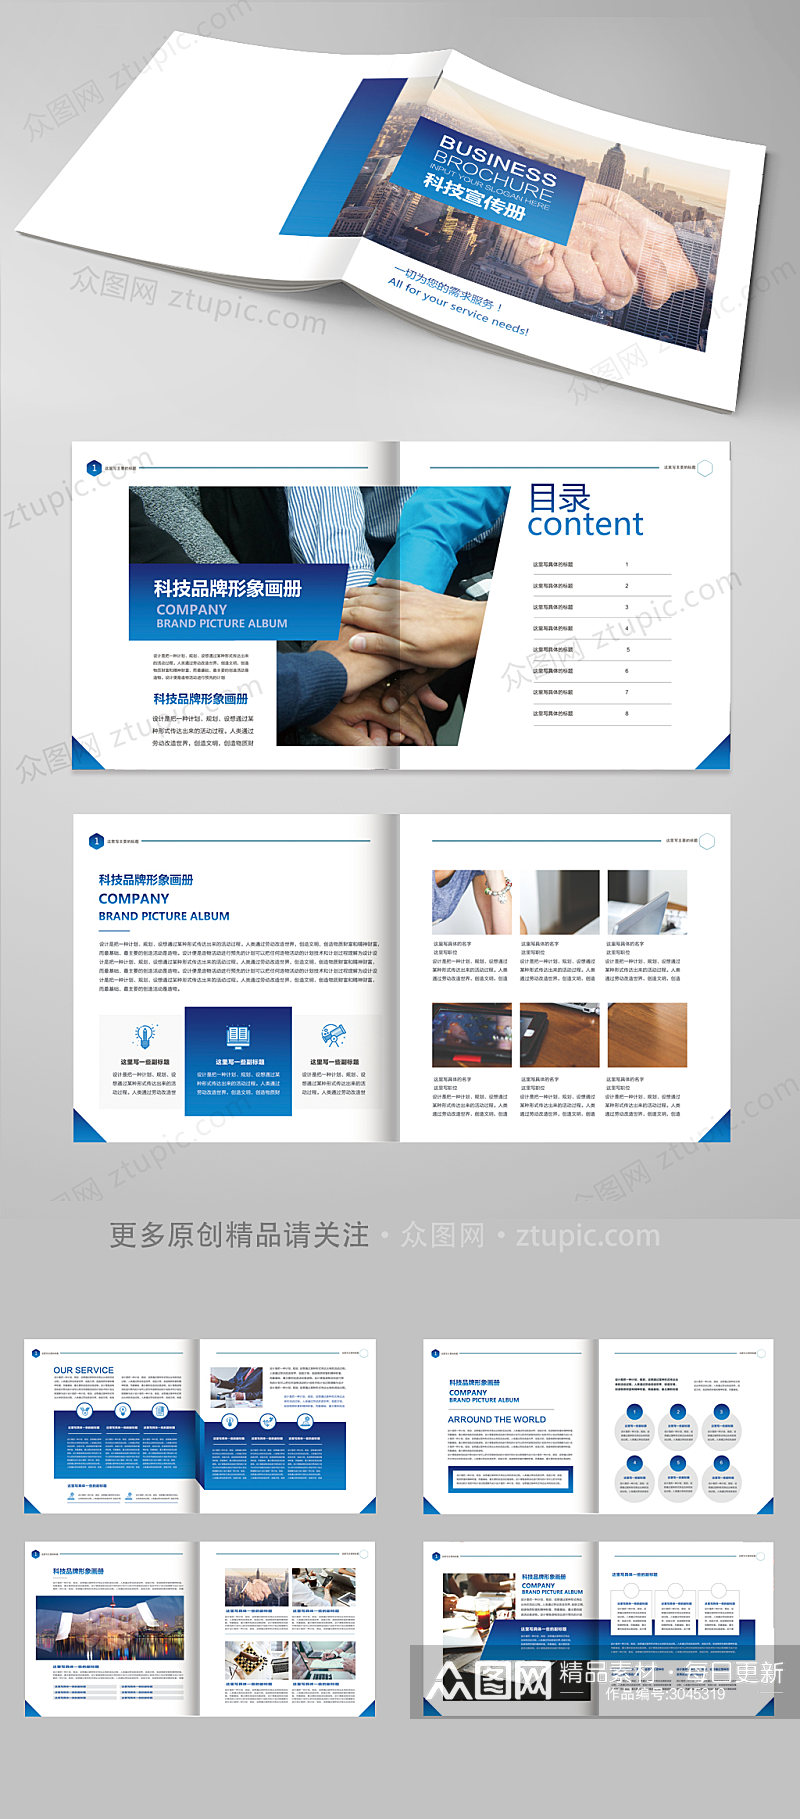 蓝色企业科技画册宣传册素材